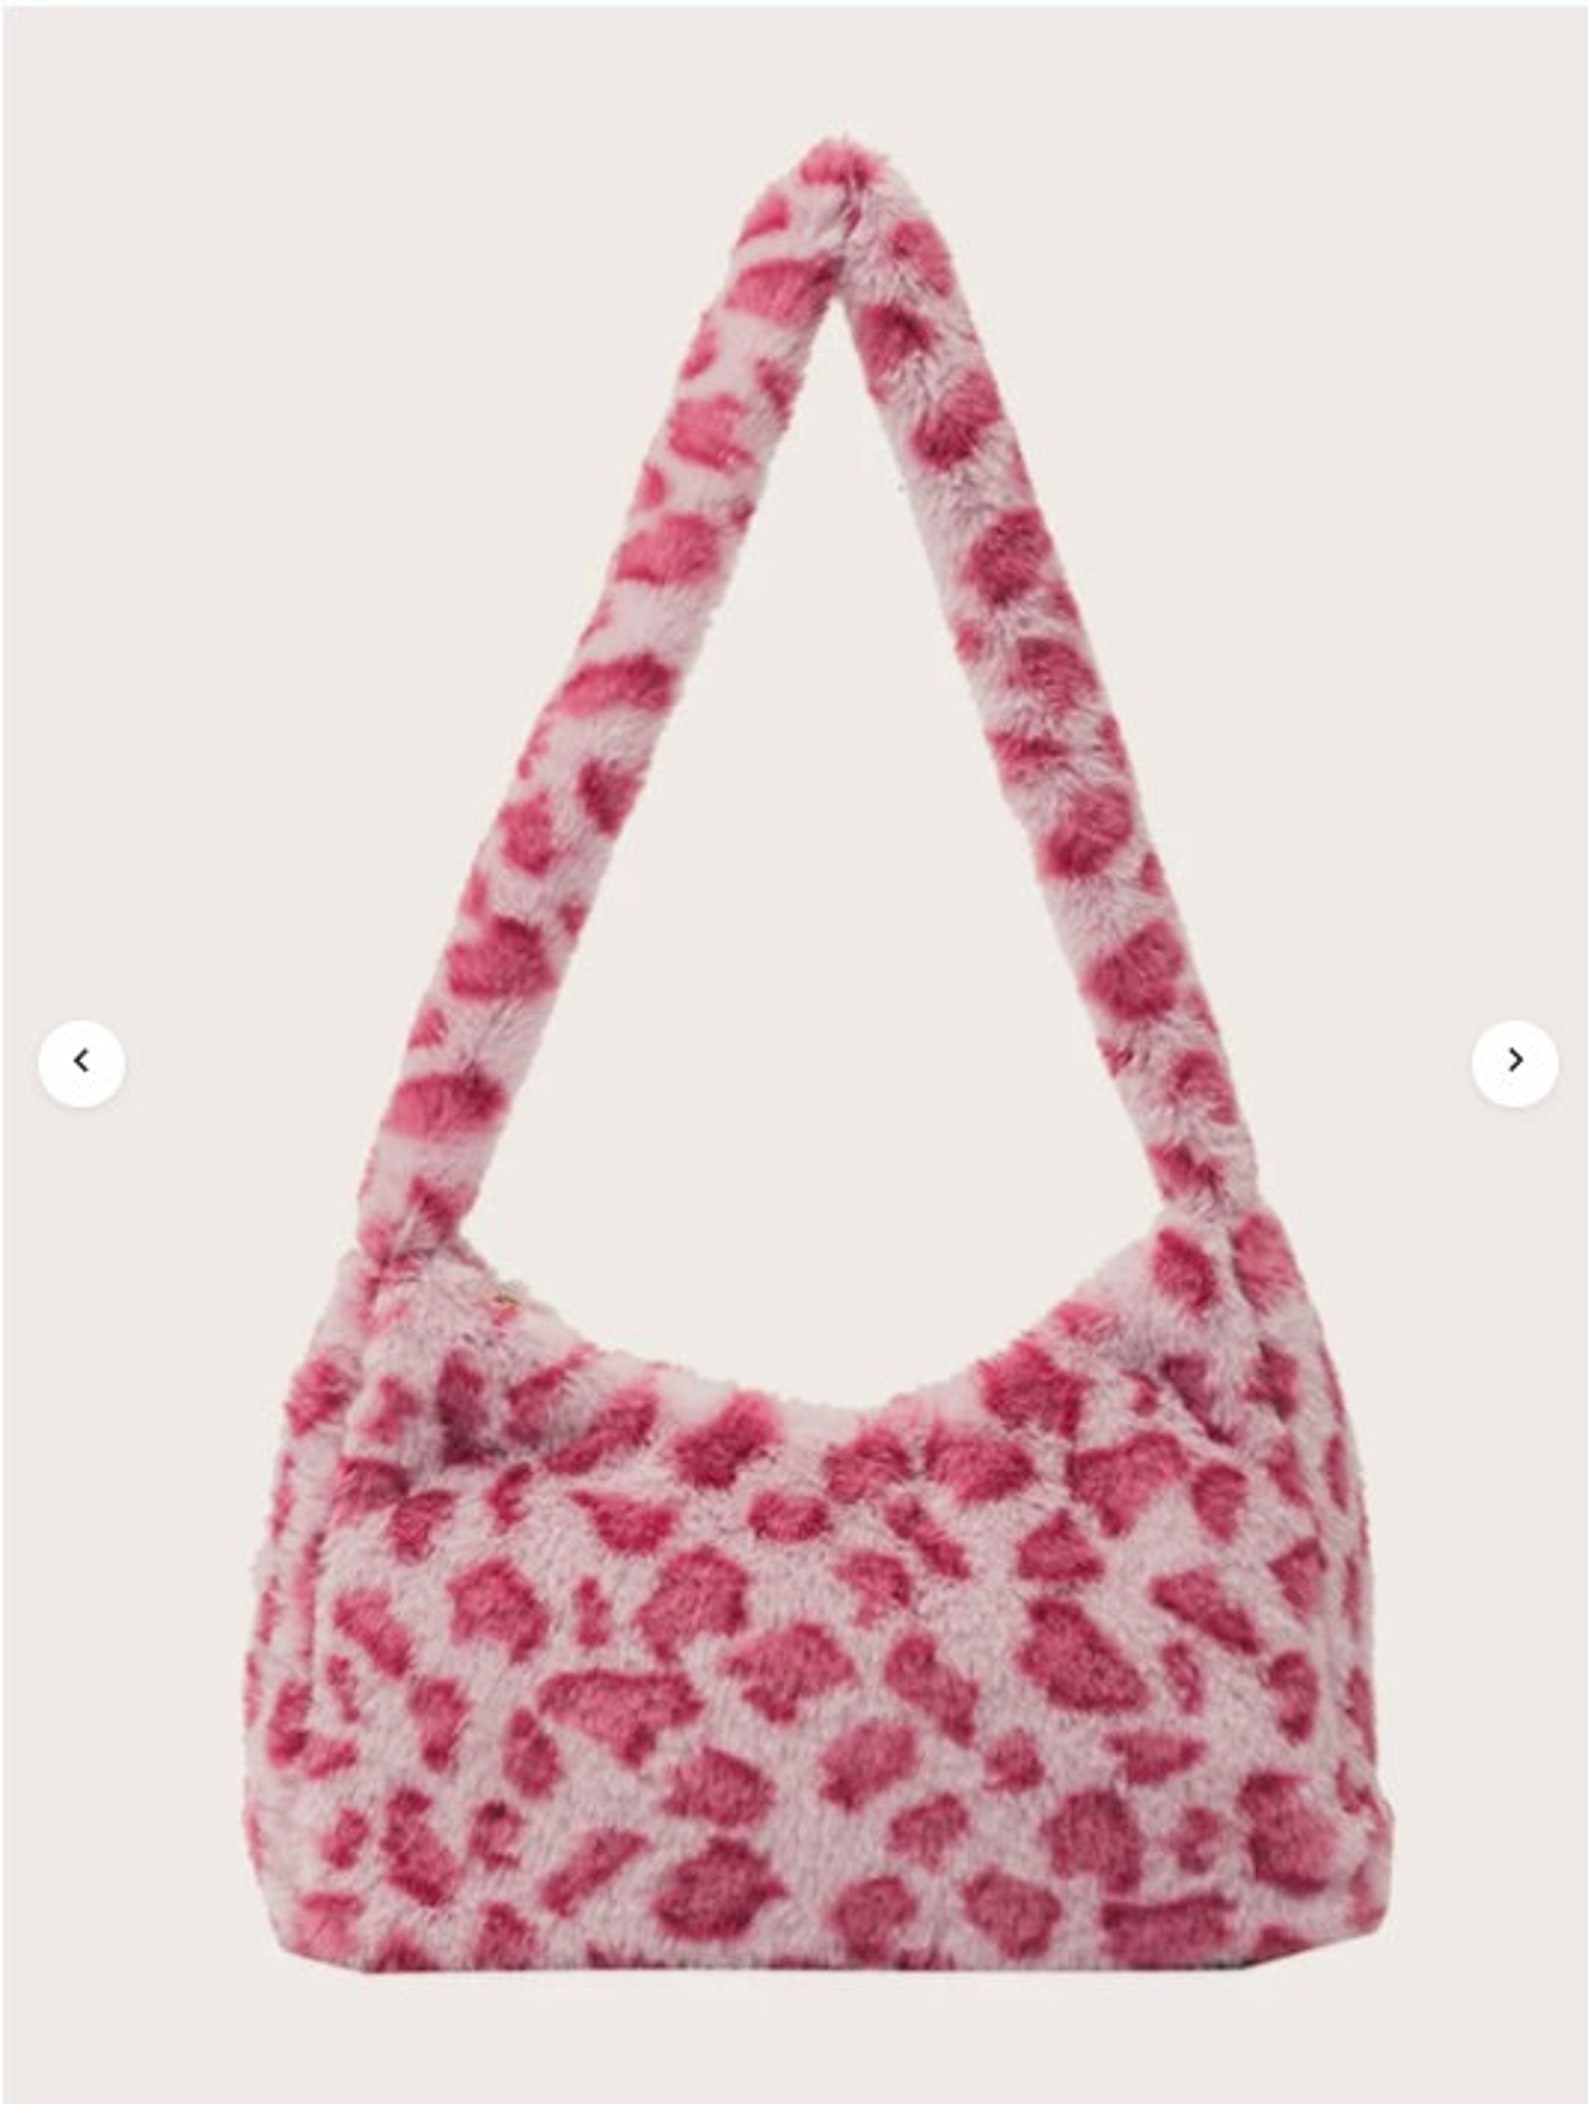 Pink Cow Pattern Fluffy Baguette Bag Shoulder Bag Hand Bag | Etsy